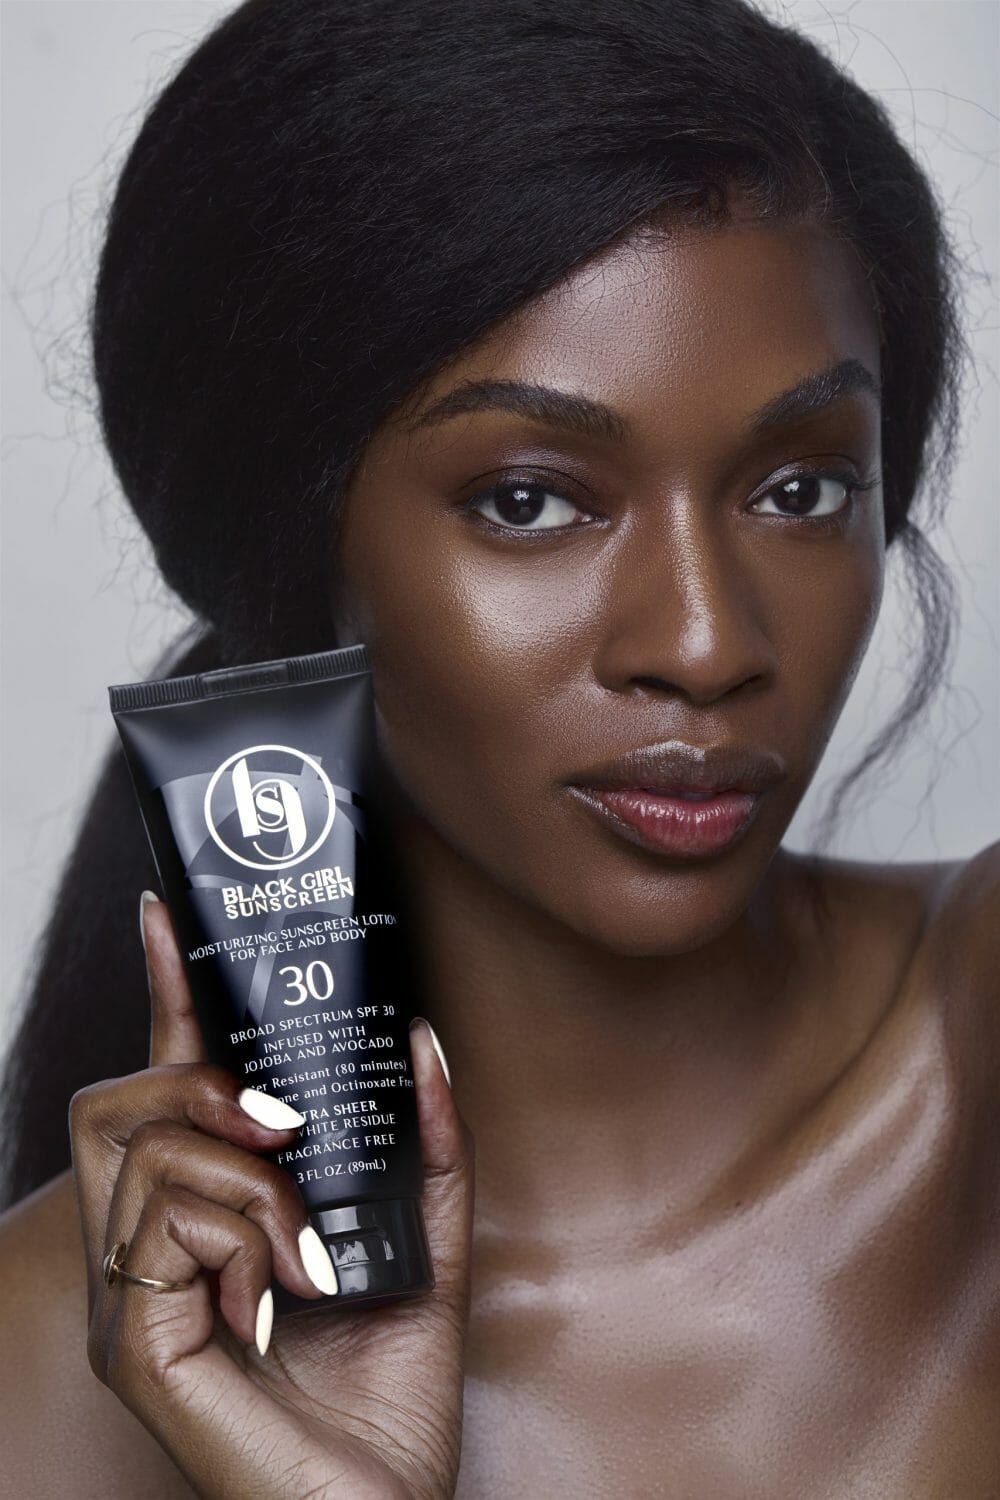 Black Girl Sunscreen - Make It Hybrid SPF50 - 89ml - Kanvas Beauty Australia